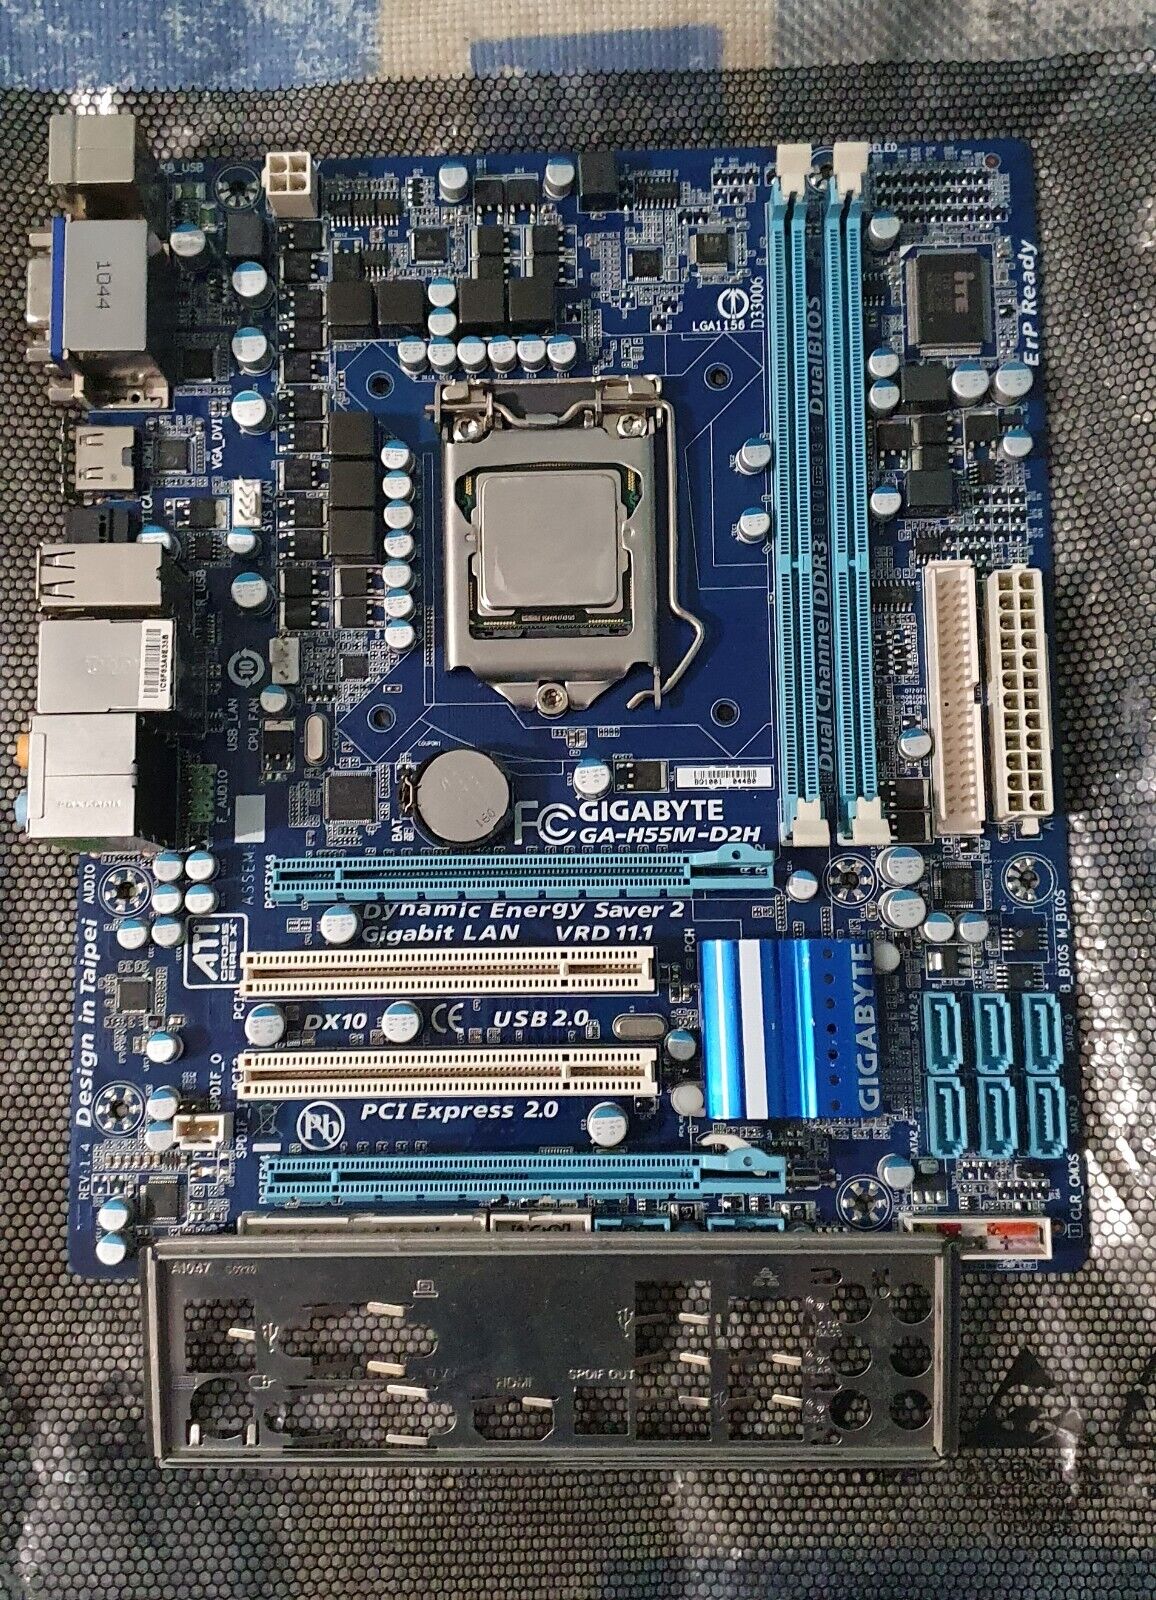 Gigabyte GA-H55M-D2H (rev. 1.4), LGA 1156, Intel Core i5-760 4 core, DDR3